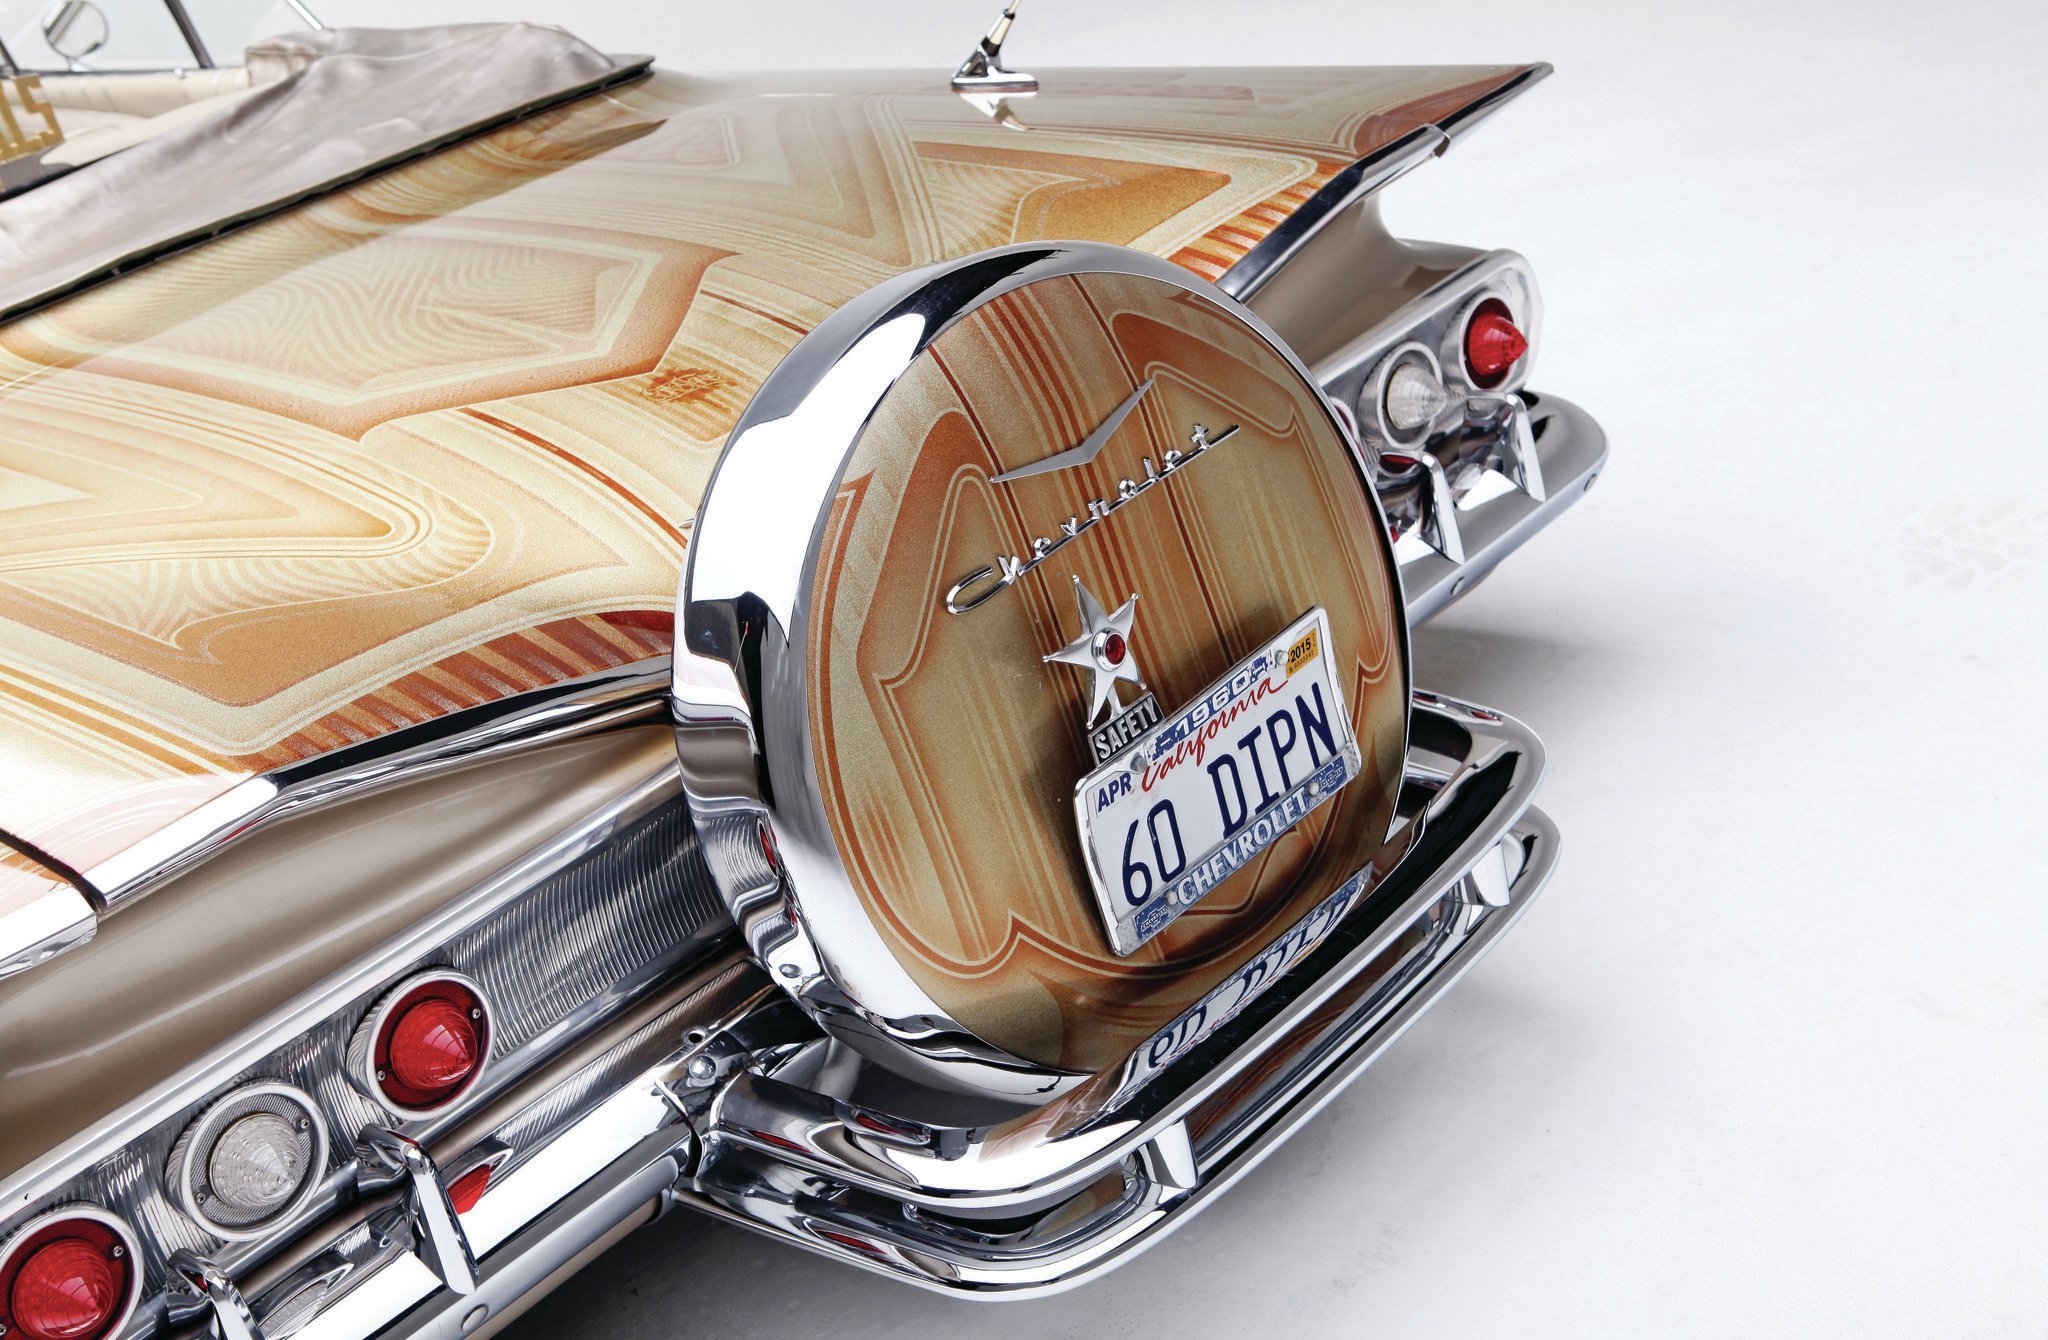 1960, Chevrolet, Impala, Convertible, Custom, Tuning, Hot, Rods, Rod, Gangsta, Lowrider Wallpaper